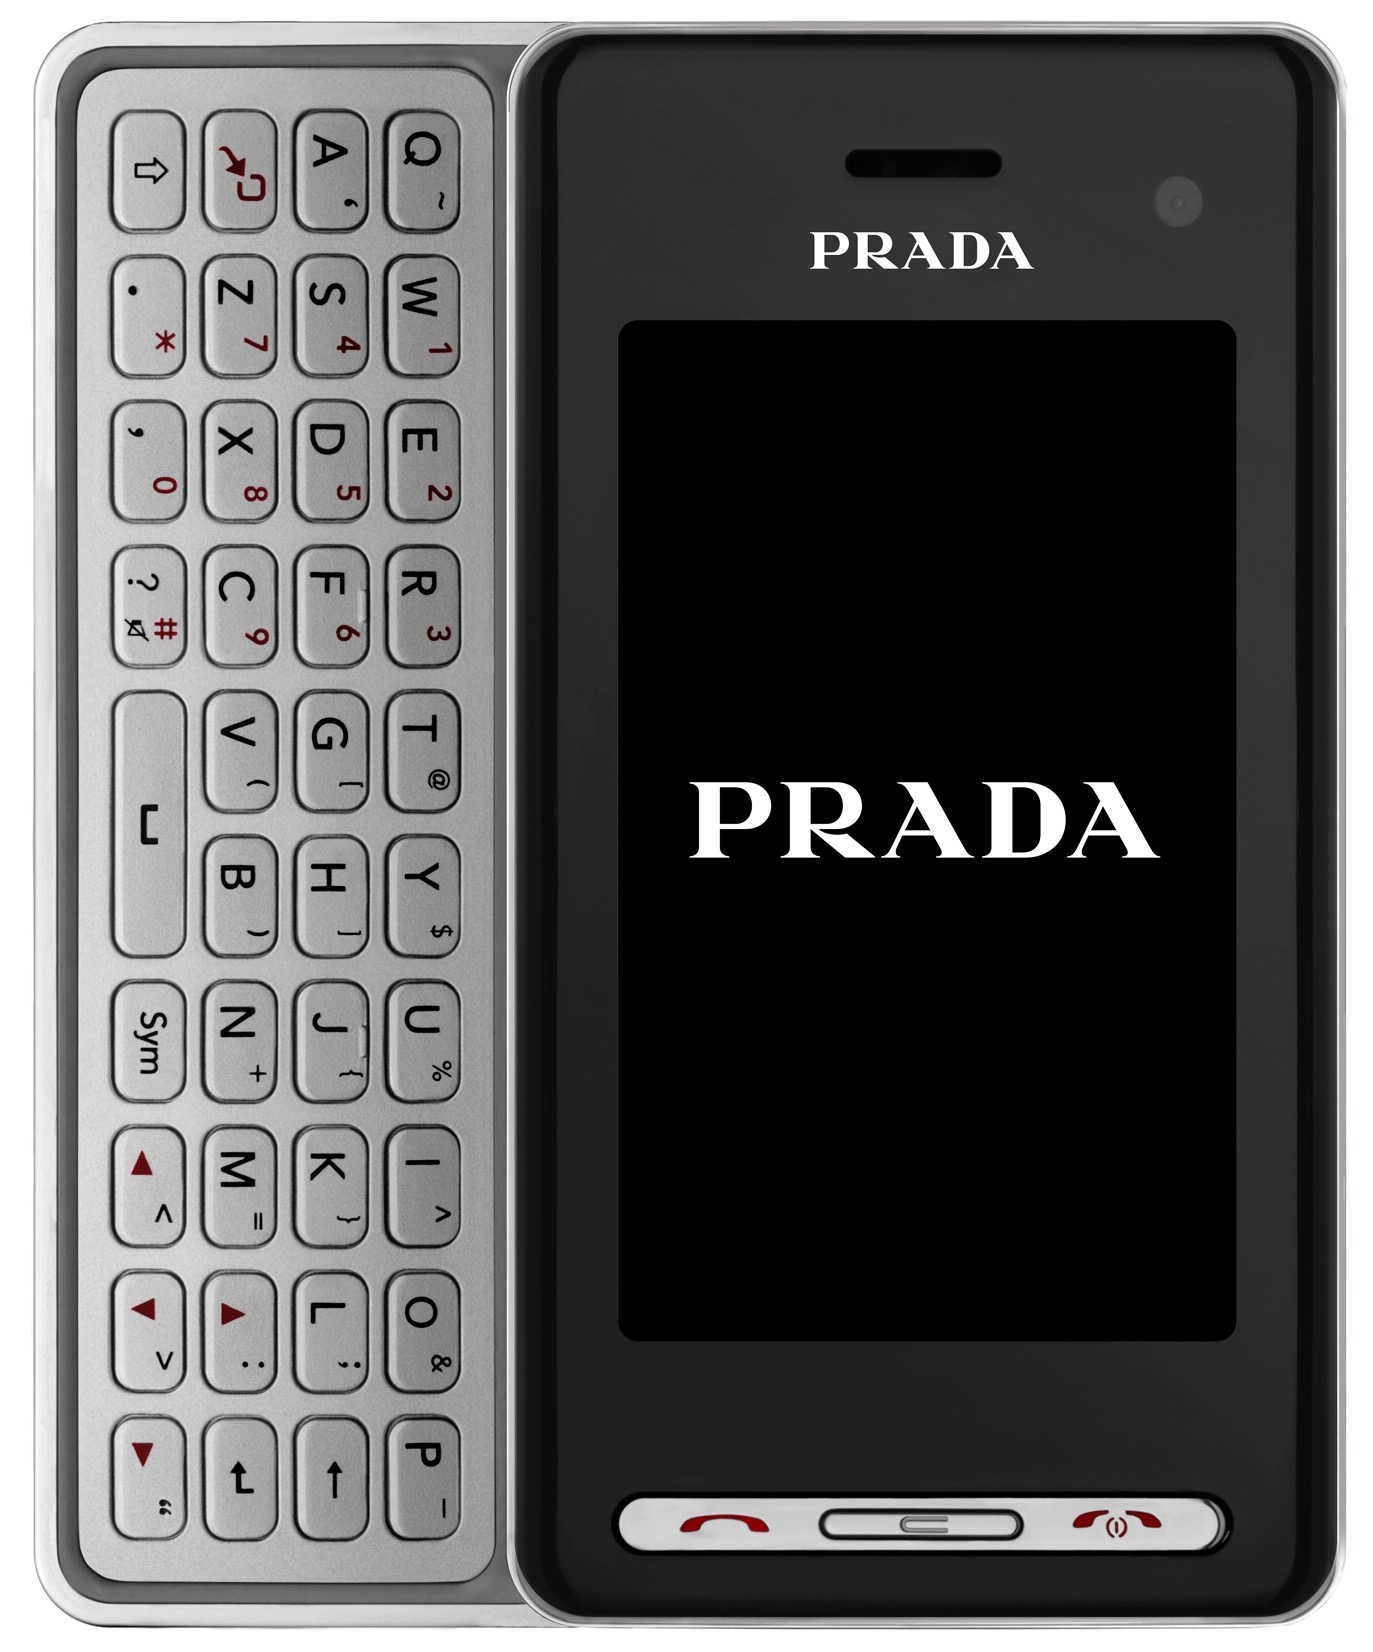 PRADA_Phone_by_LG_(LG-KF900).jpg